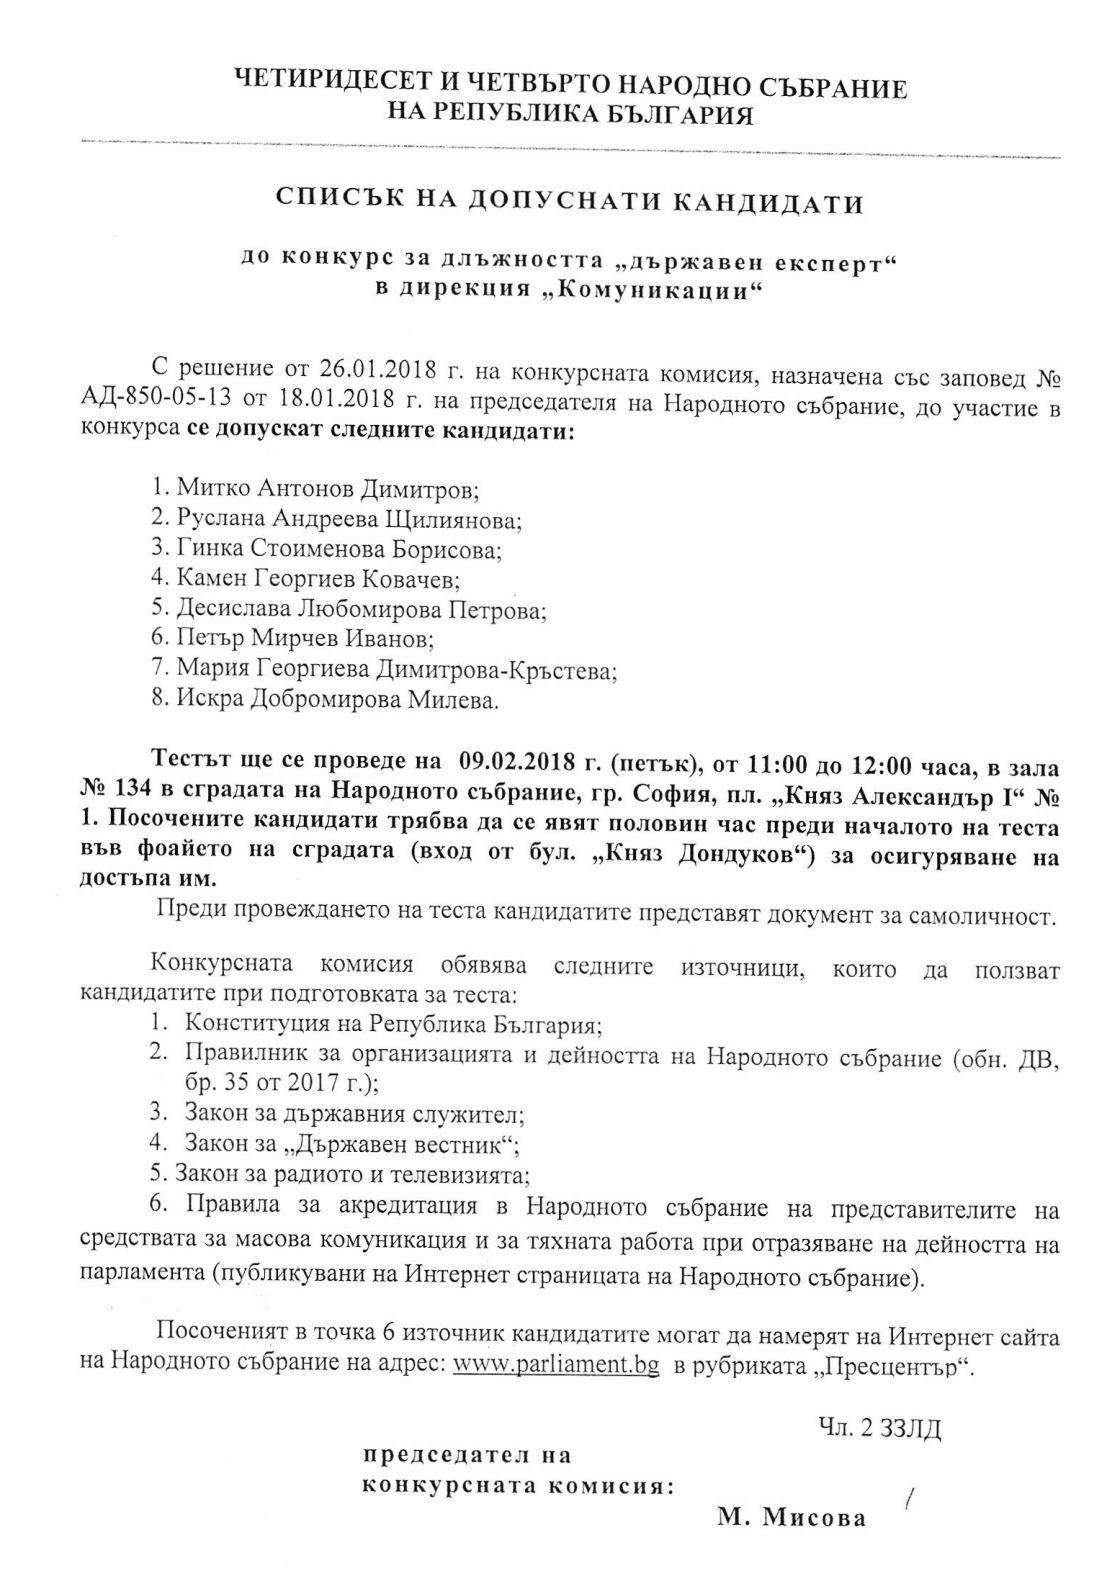 Гинка Борисова кандидатства за позицията държавен експерт в пресцентъра на НС, 2018 г.